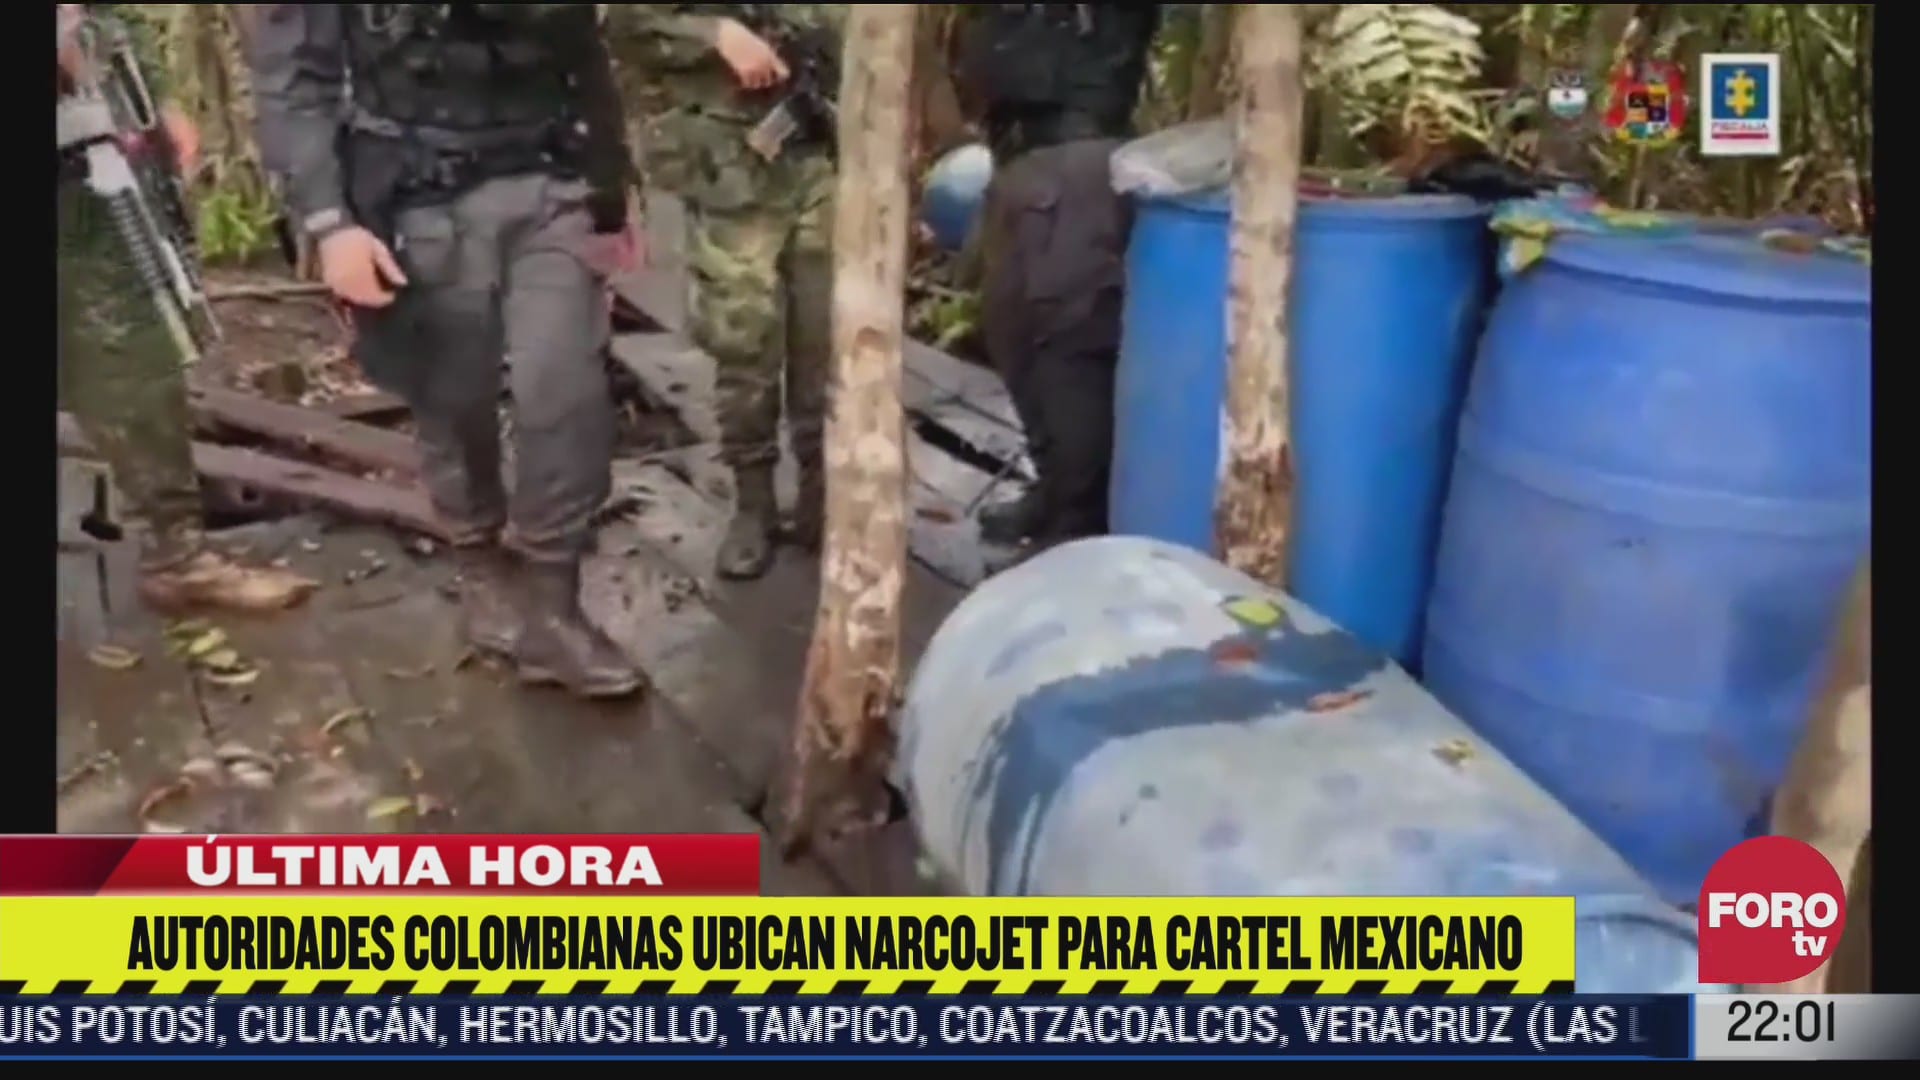 colombia ubica en guatemala narcojet que seria recibido por contactos del cjng